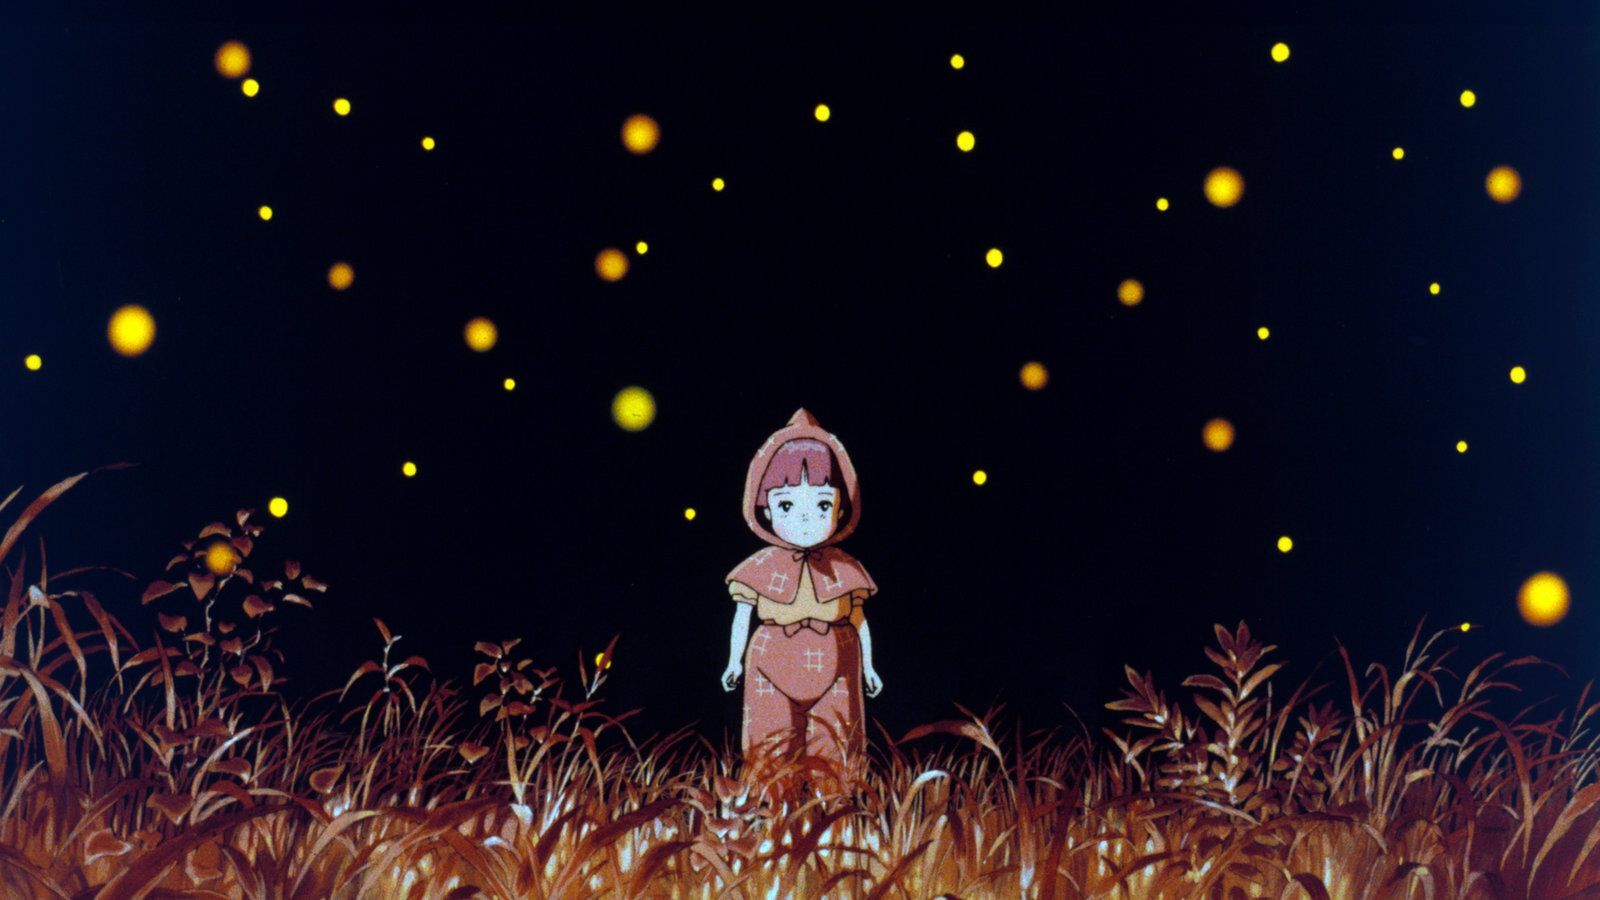 Grave of the Fireflies, Grave of the Fireflies anime cel